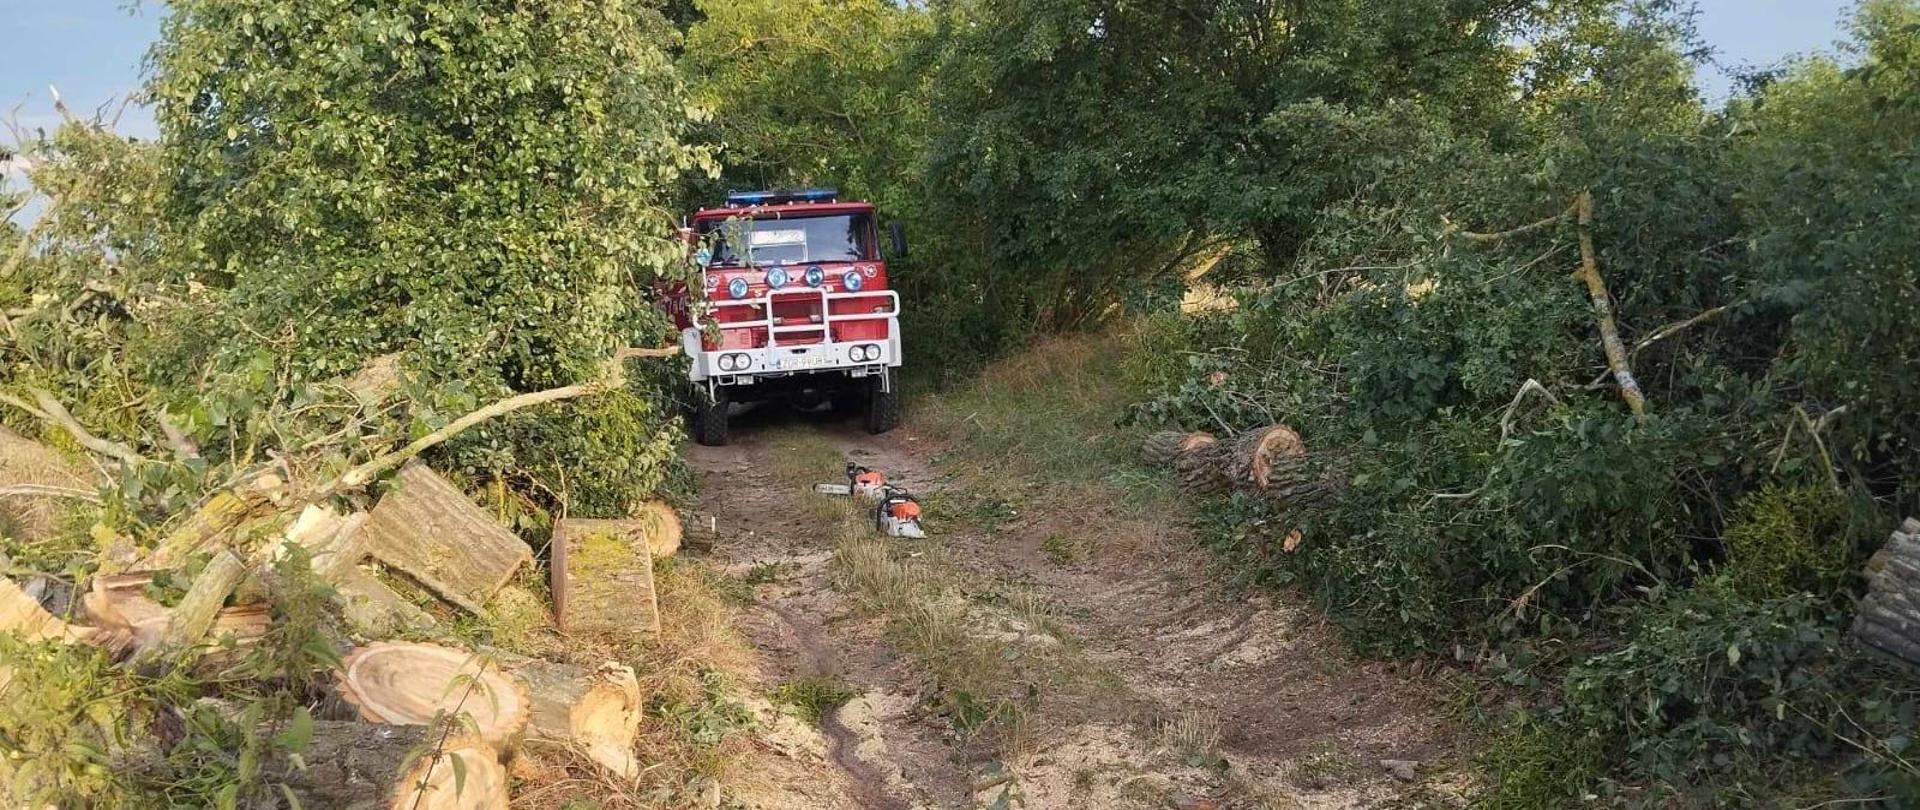 Zdjęcie przedstawia pojazd pożarniczy w trakcie udrażniania drogi przez powalone drzewo.